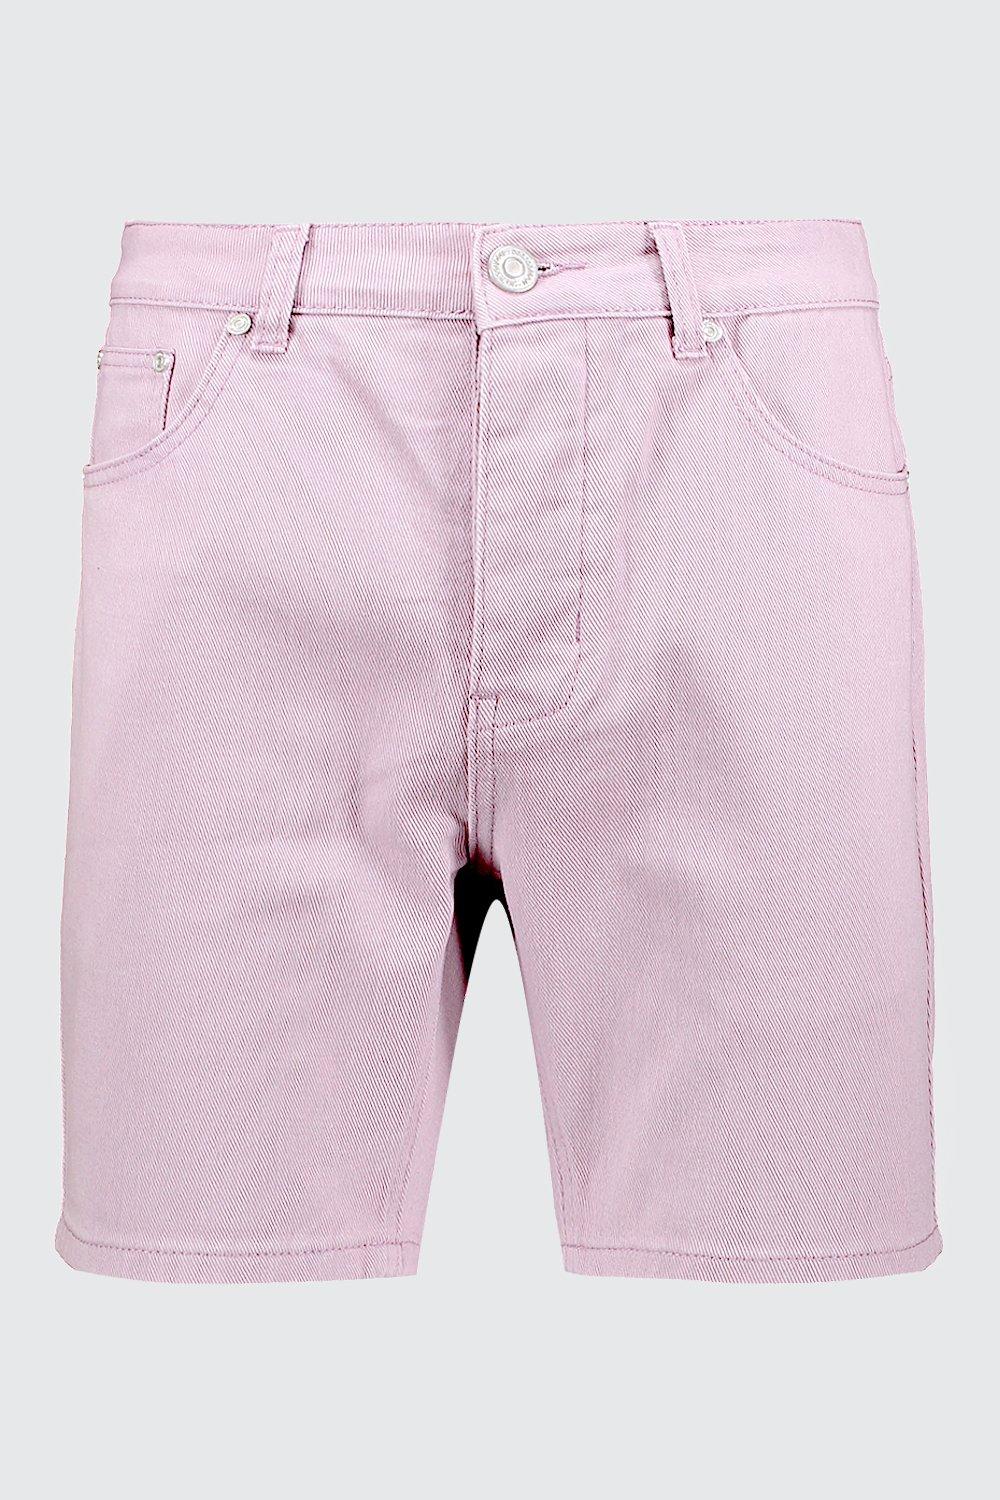 lilac denim shorts